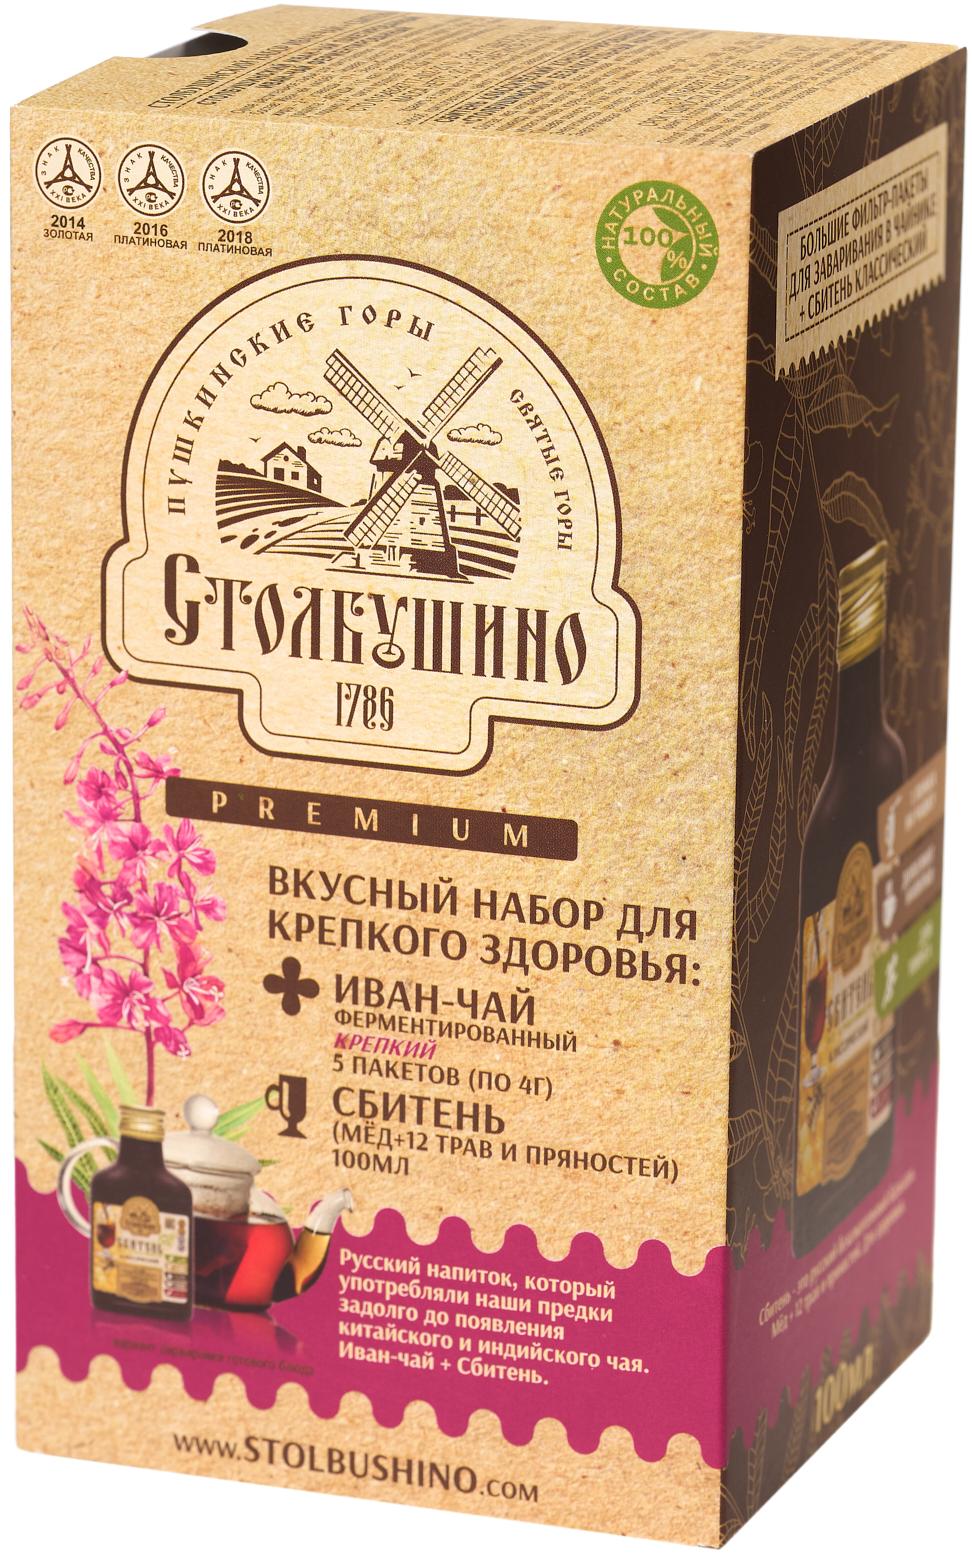 Tasty Stolbushinsky set for good health (fermented Ivan tea 5 bags 4g + classic sbiten 100ml.)